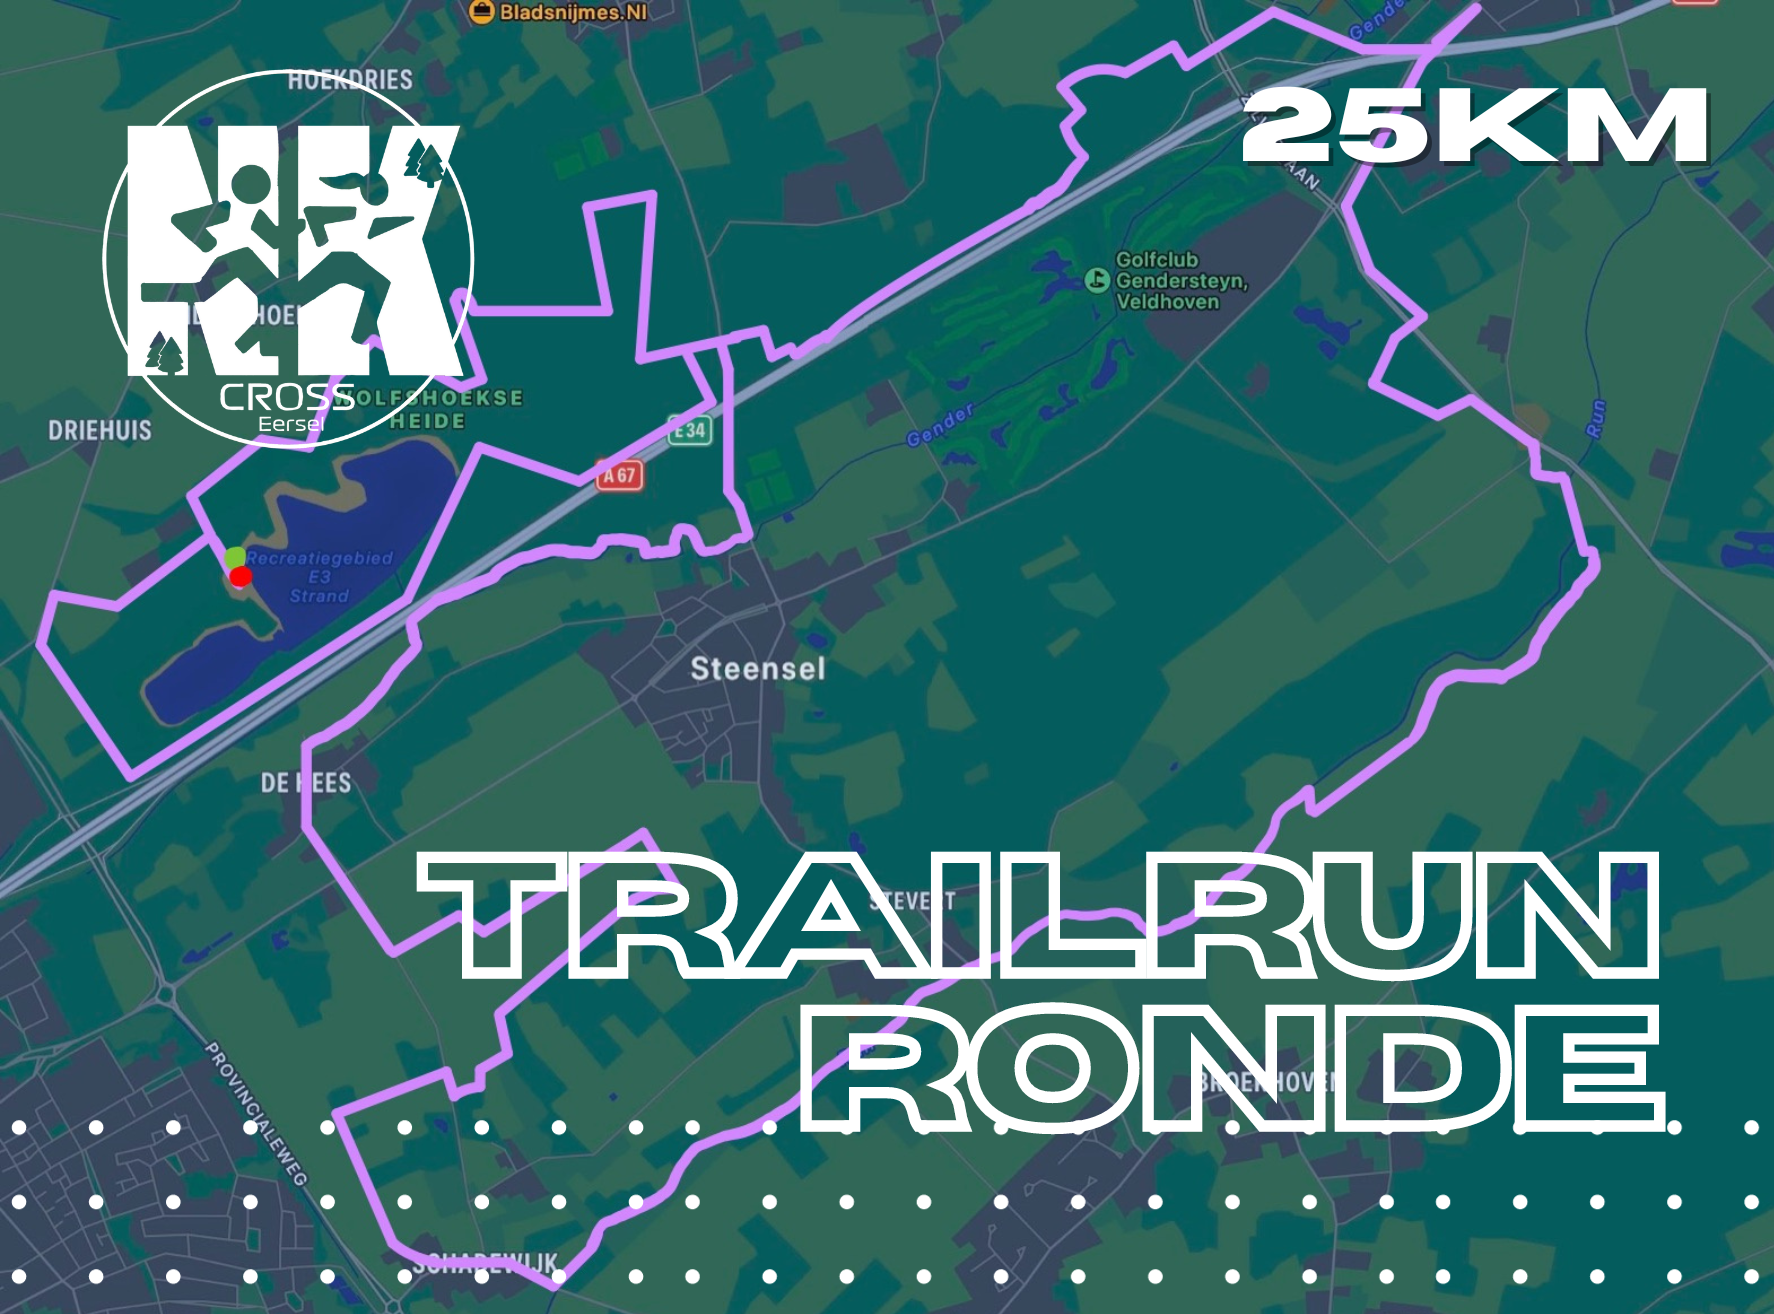 Trailrun 25km